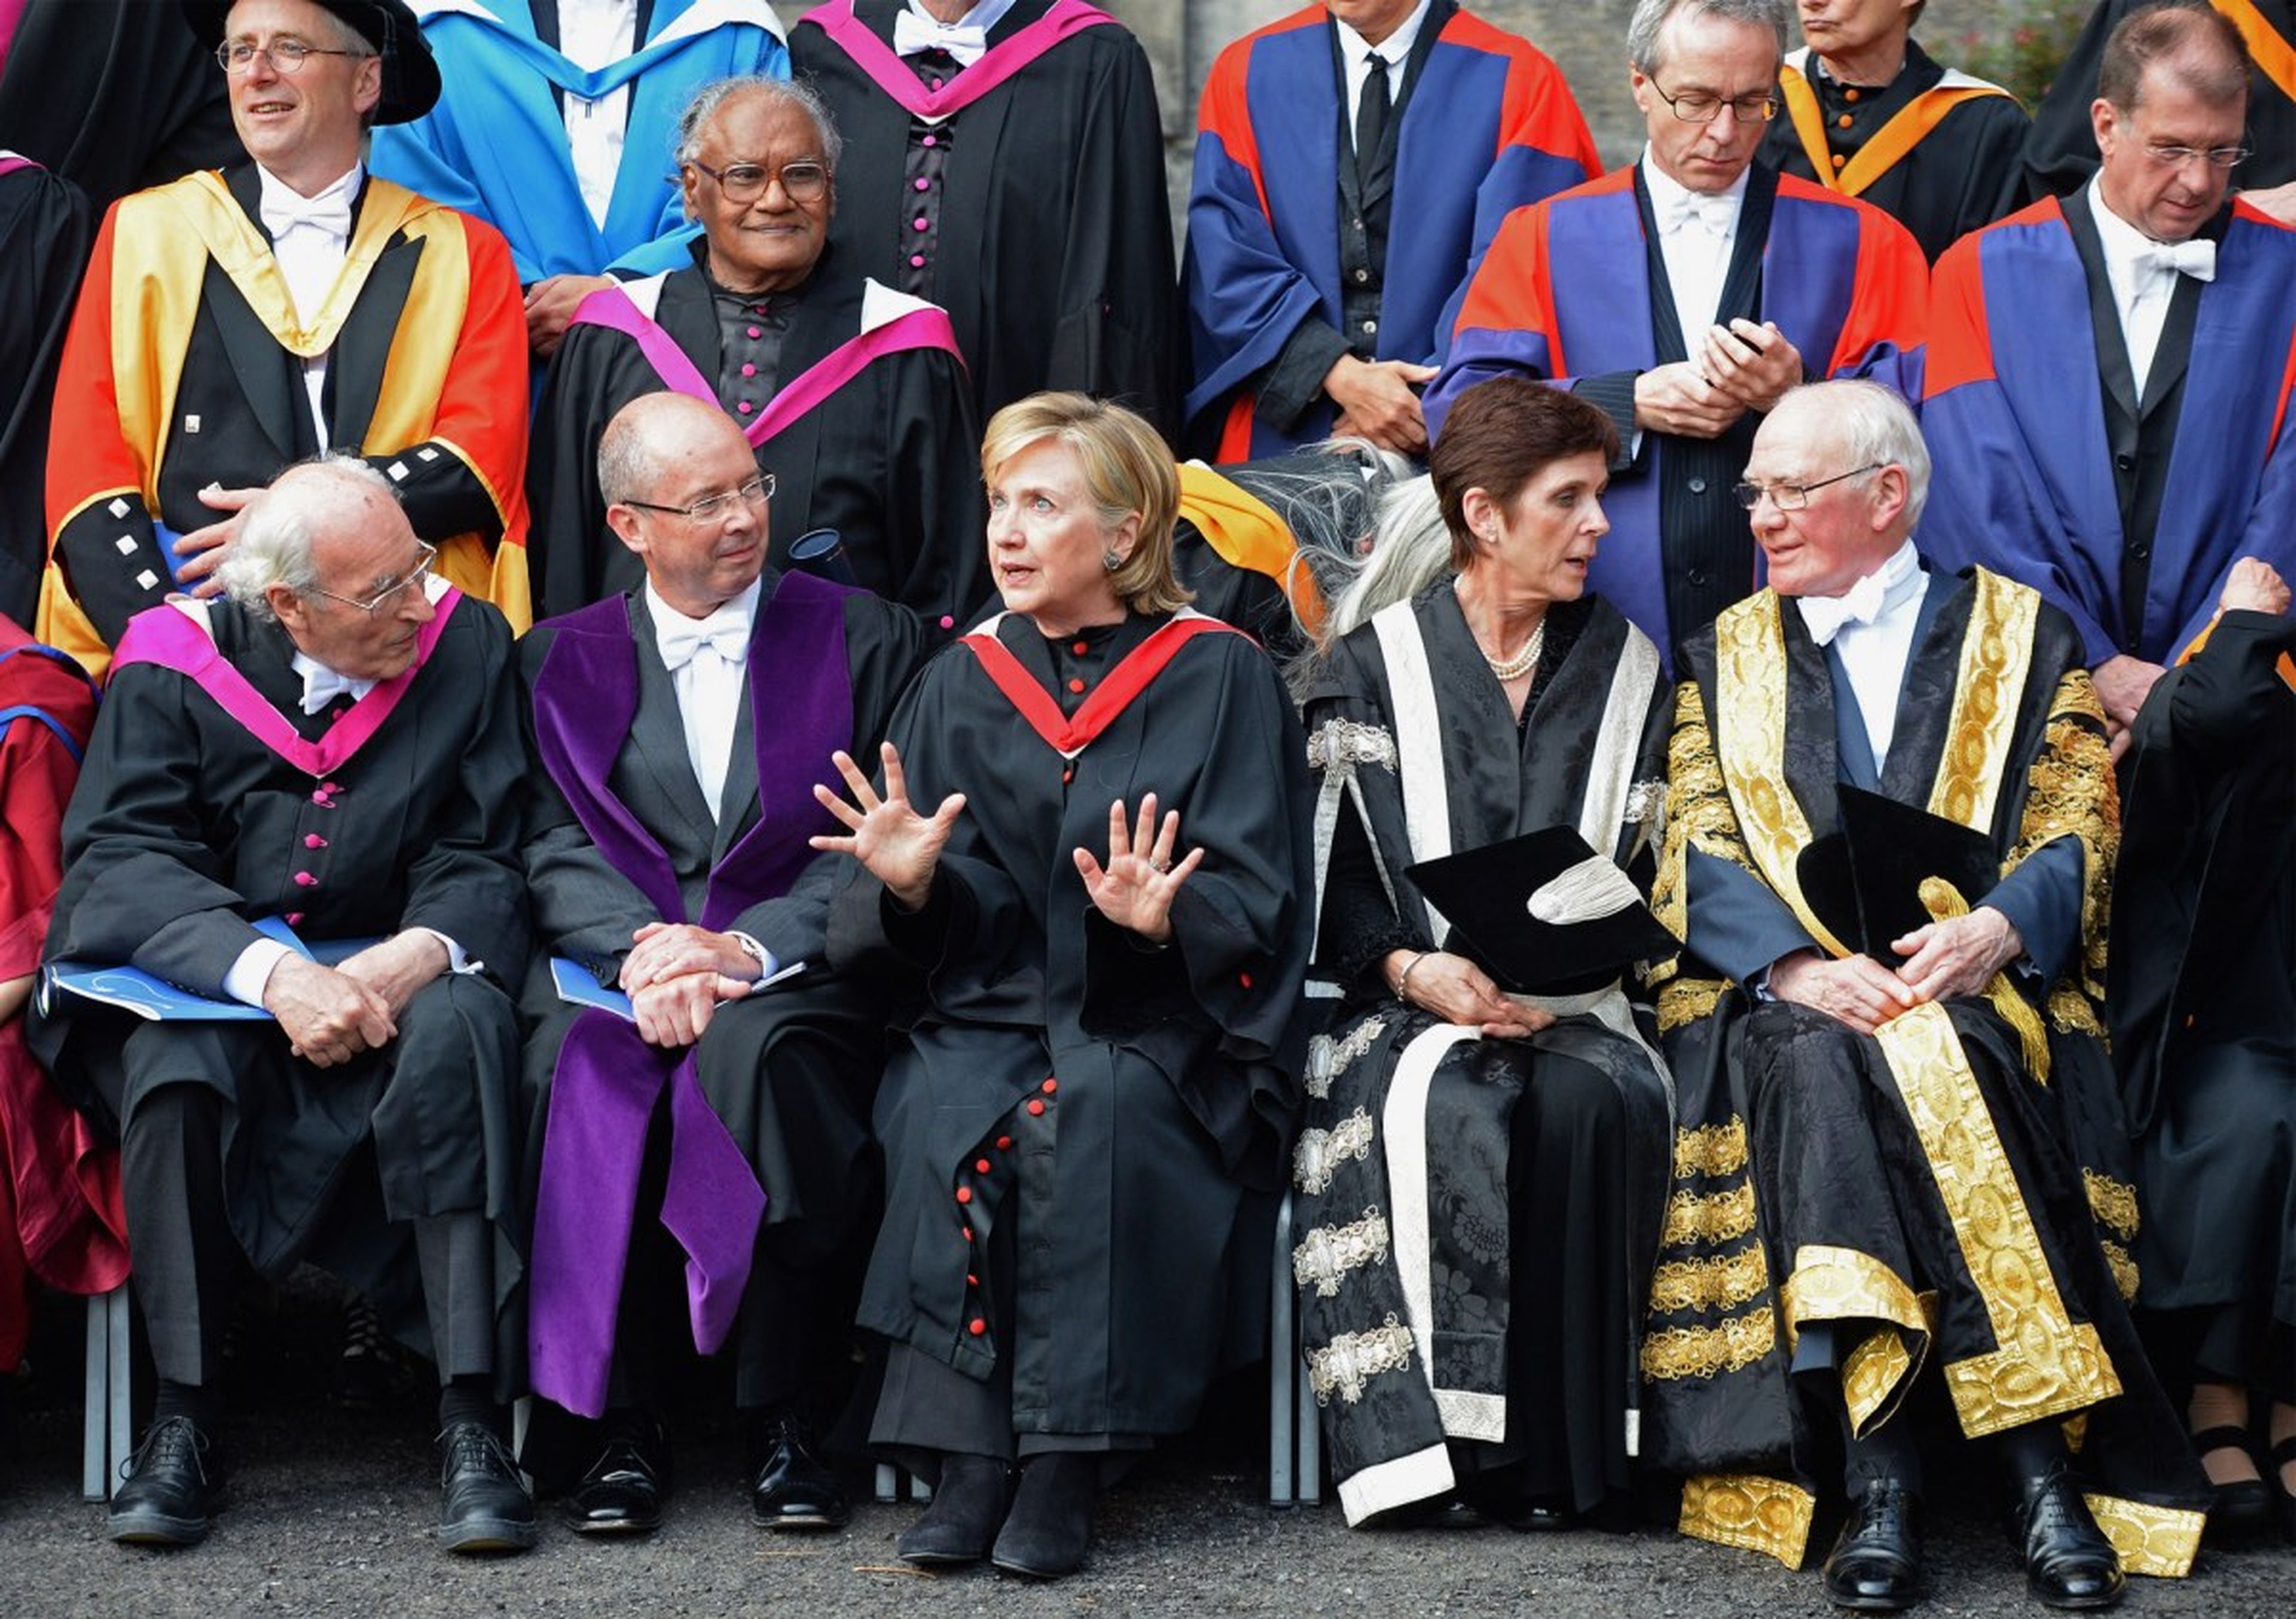 Louise Richardson junto a Hilary Clinton, en 2013. Richardson fue vicerrectora de la Universidad de Sant Andrews y ahora ocupa ese cargo en Oxford. Es la primera mujer en la Historia que lo consigue.